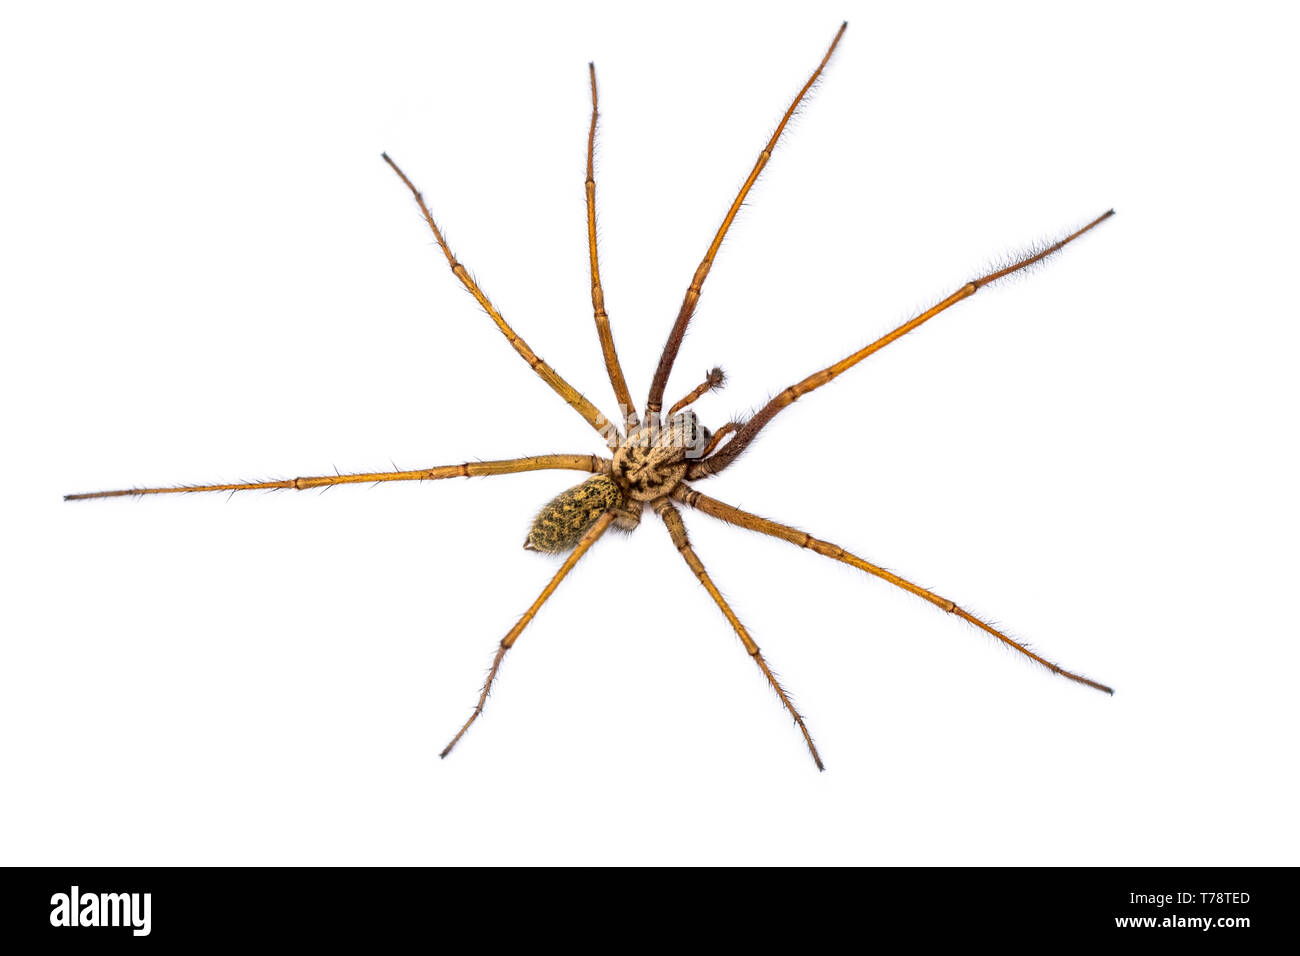 Riesige Haus Spinne (Eratigena atrica) von oben nach unten Blick auf Spinne mit langen, haarigen Beinen auf weißem Hintergrund Stockfoto